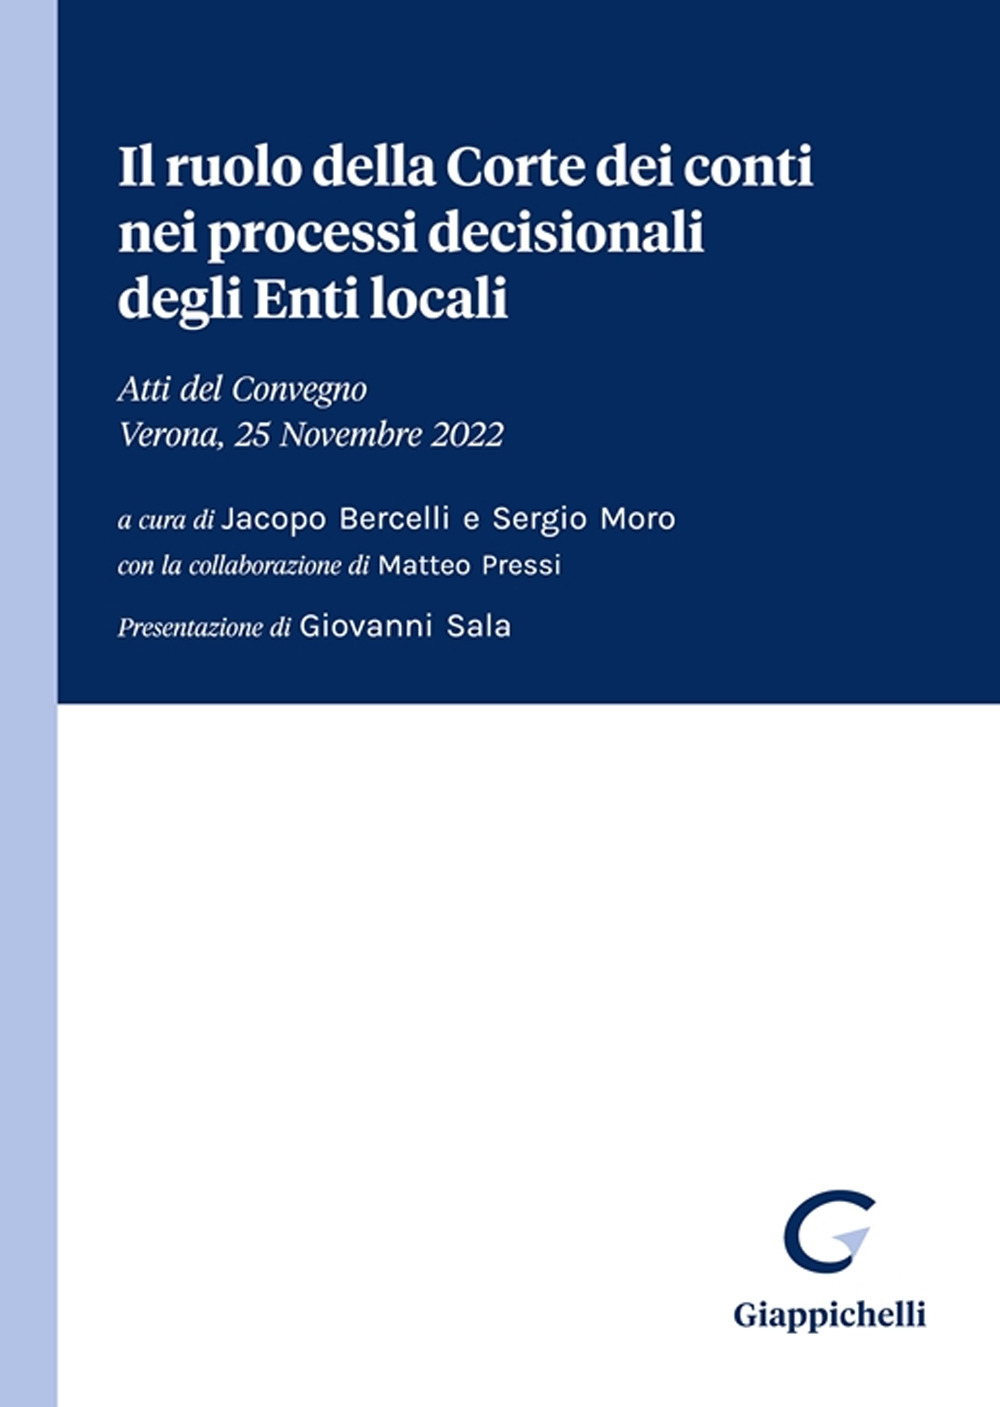 Il ruolo della Corte dei conti nei processi decisionali degli Enti locali. Atti del Convegno (Verona, 25 Novembre 2022)